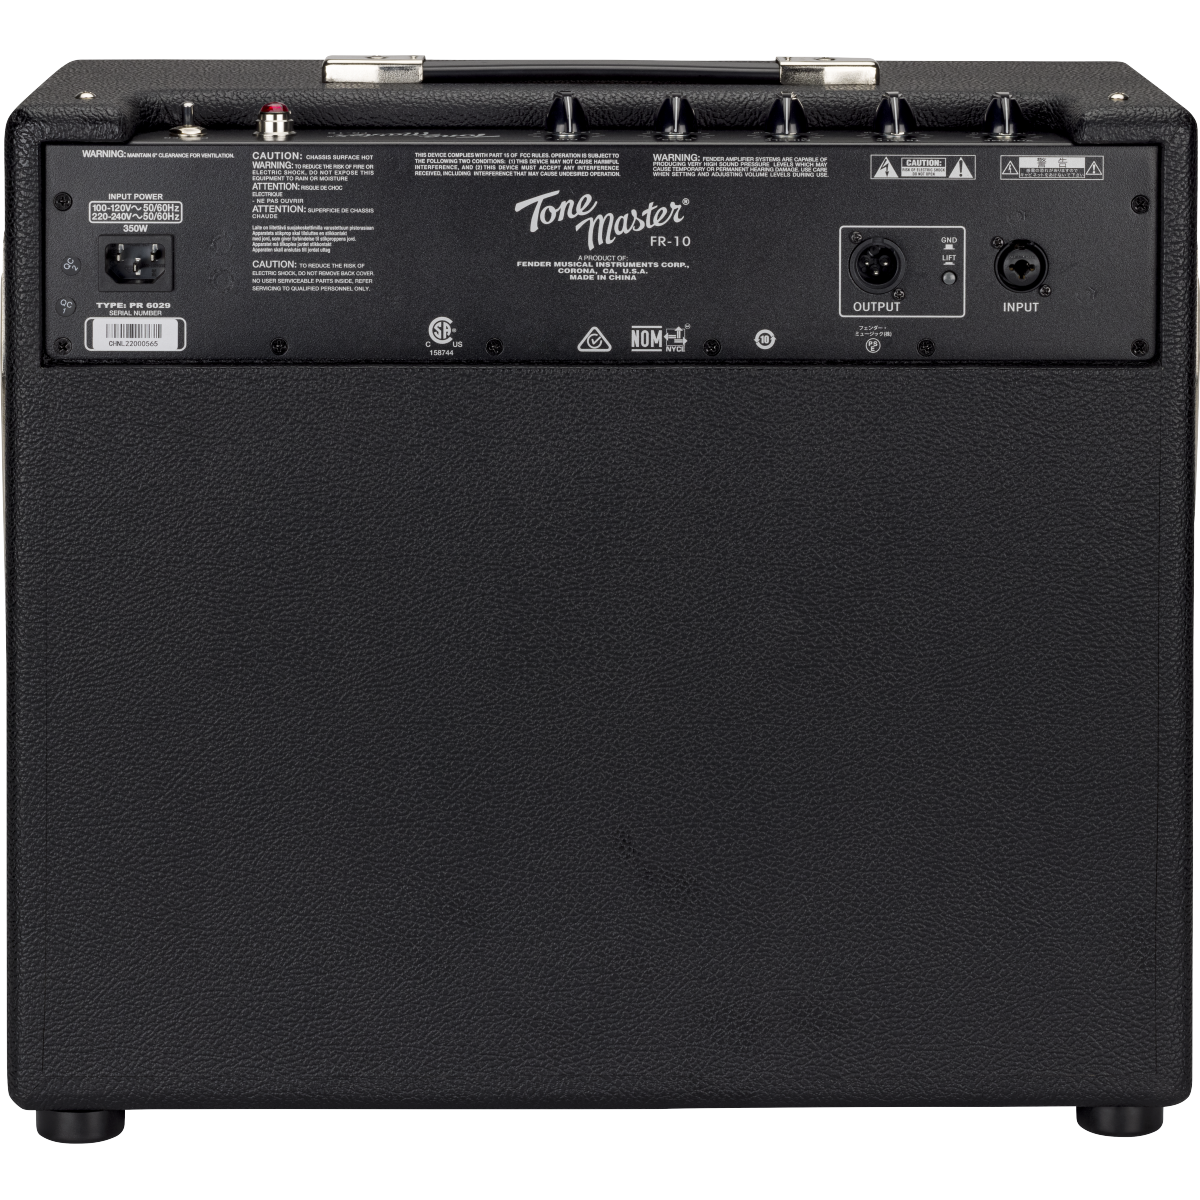 Fender 231-1500-000 Frontman 20G Guitar Amp – Easy Music Center